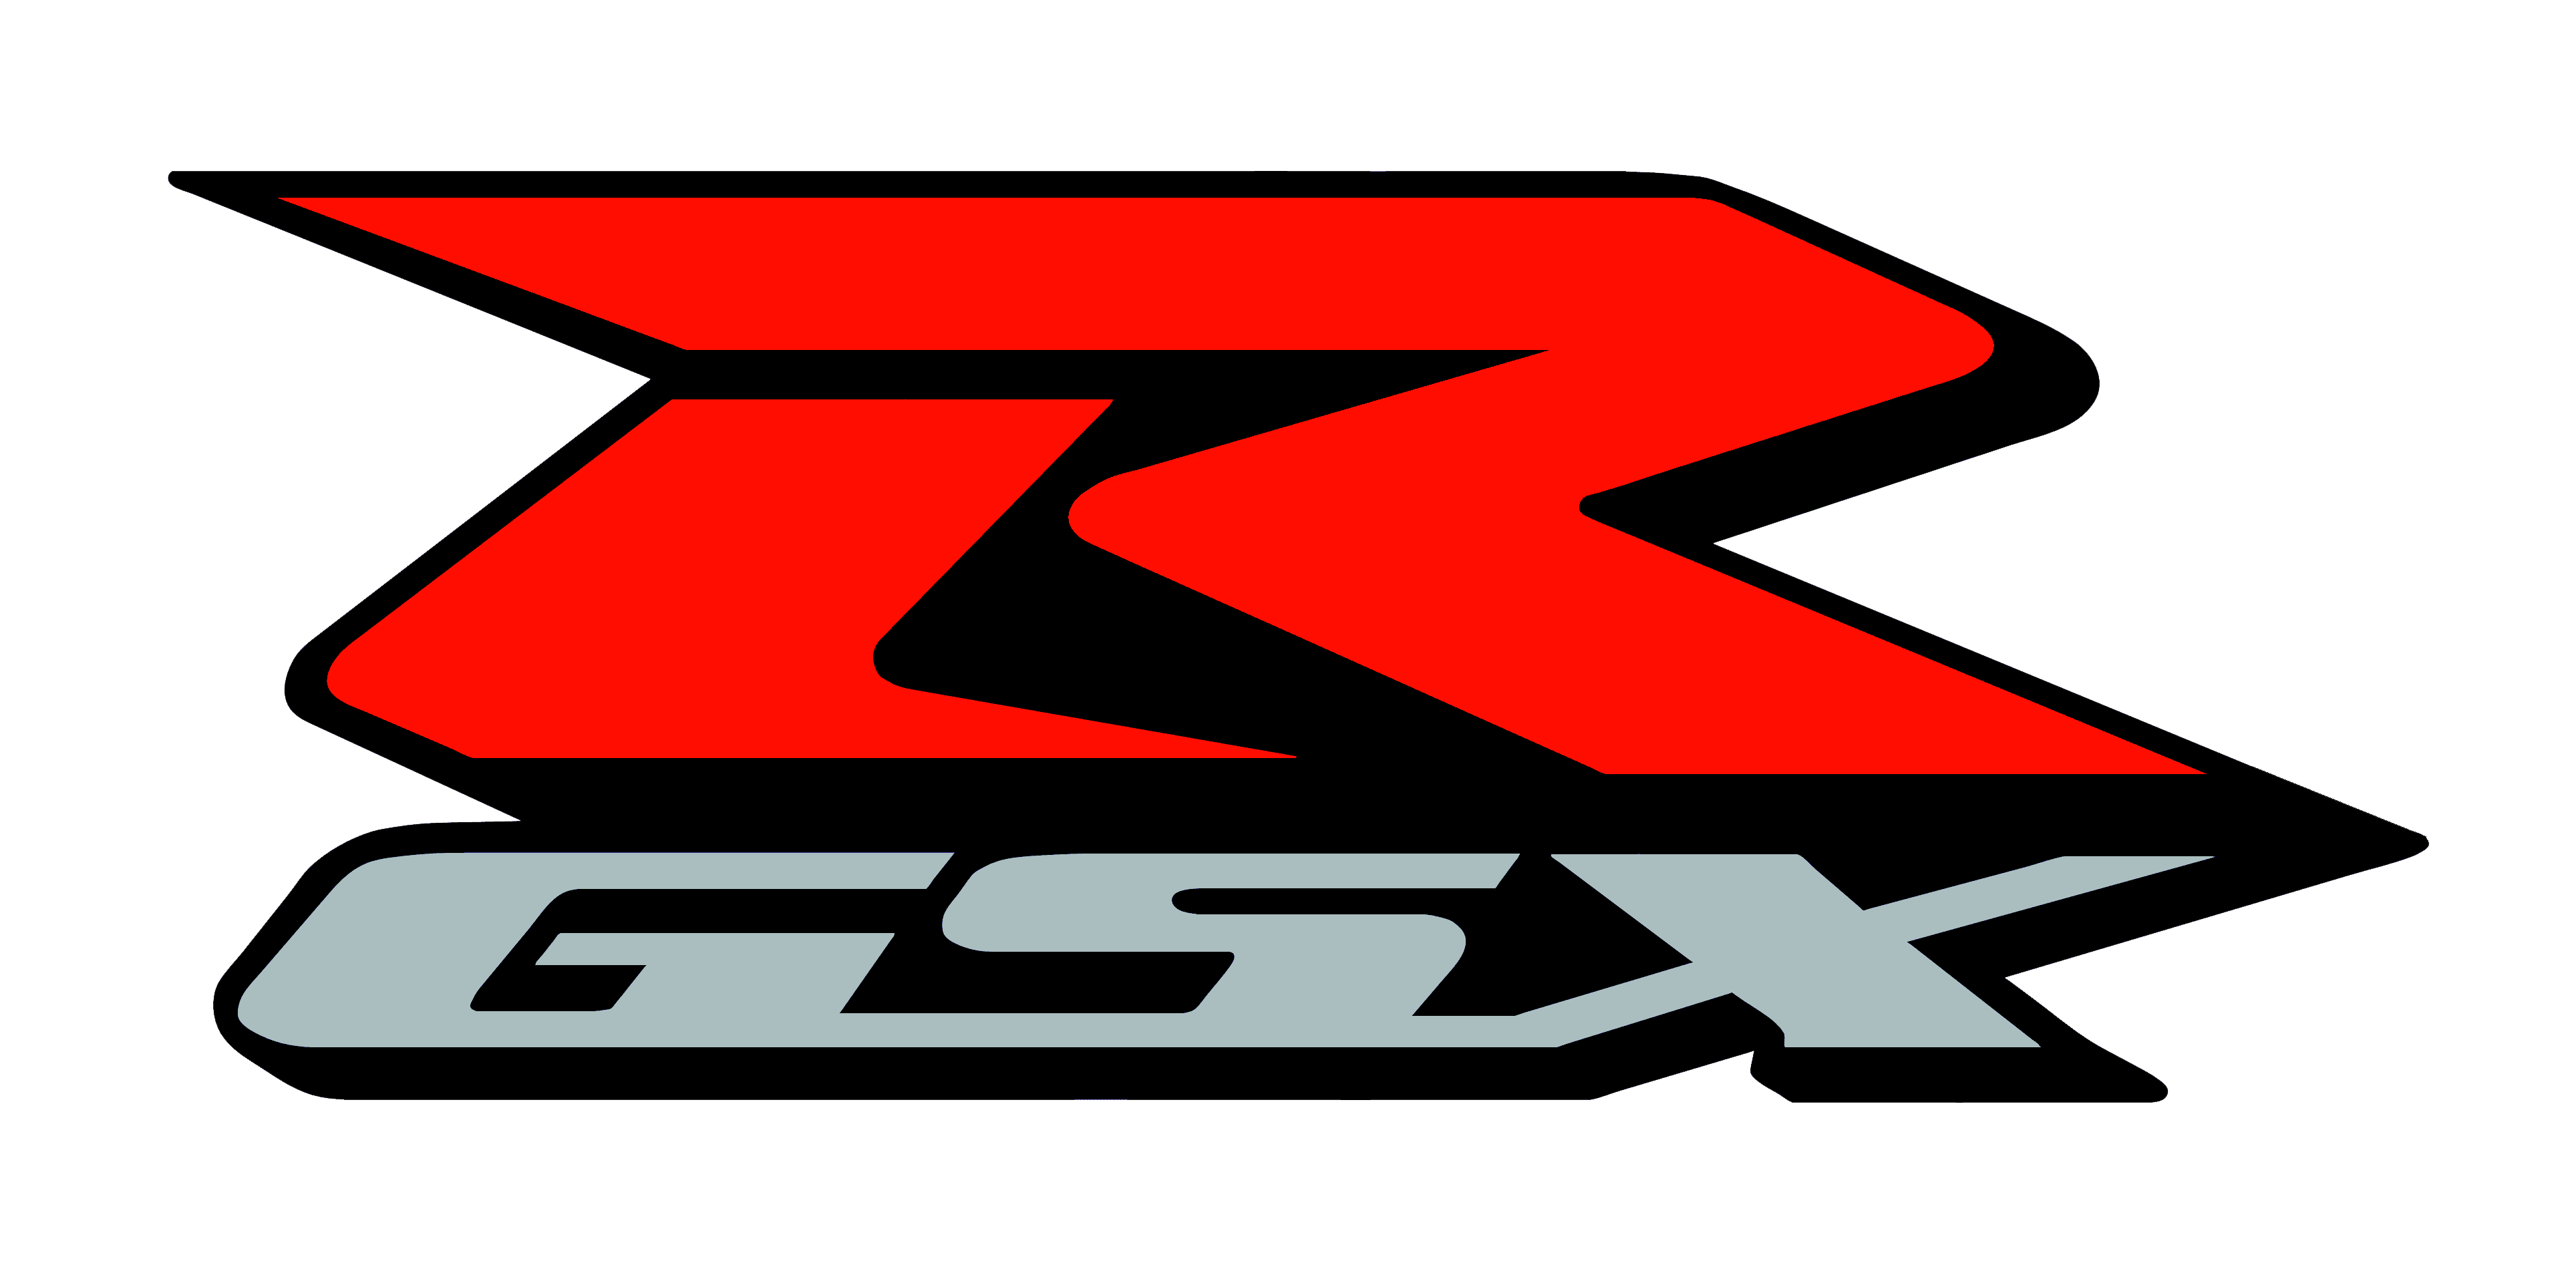 Suzuki Moto logo. Suzuki GSX-R логотип. Suzuki GSX R logo Moto. Suzuki 600 logo. R details